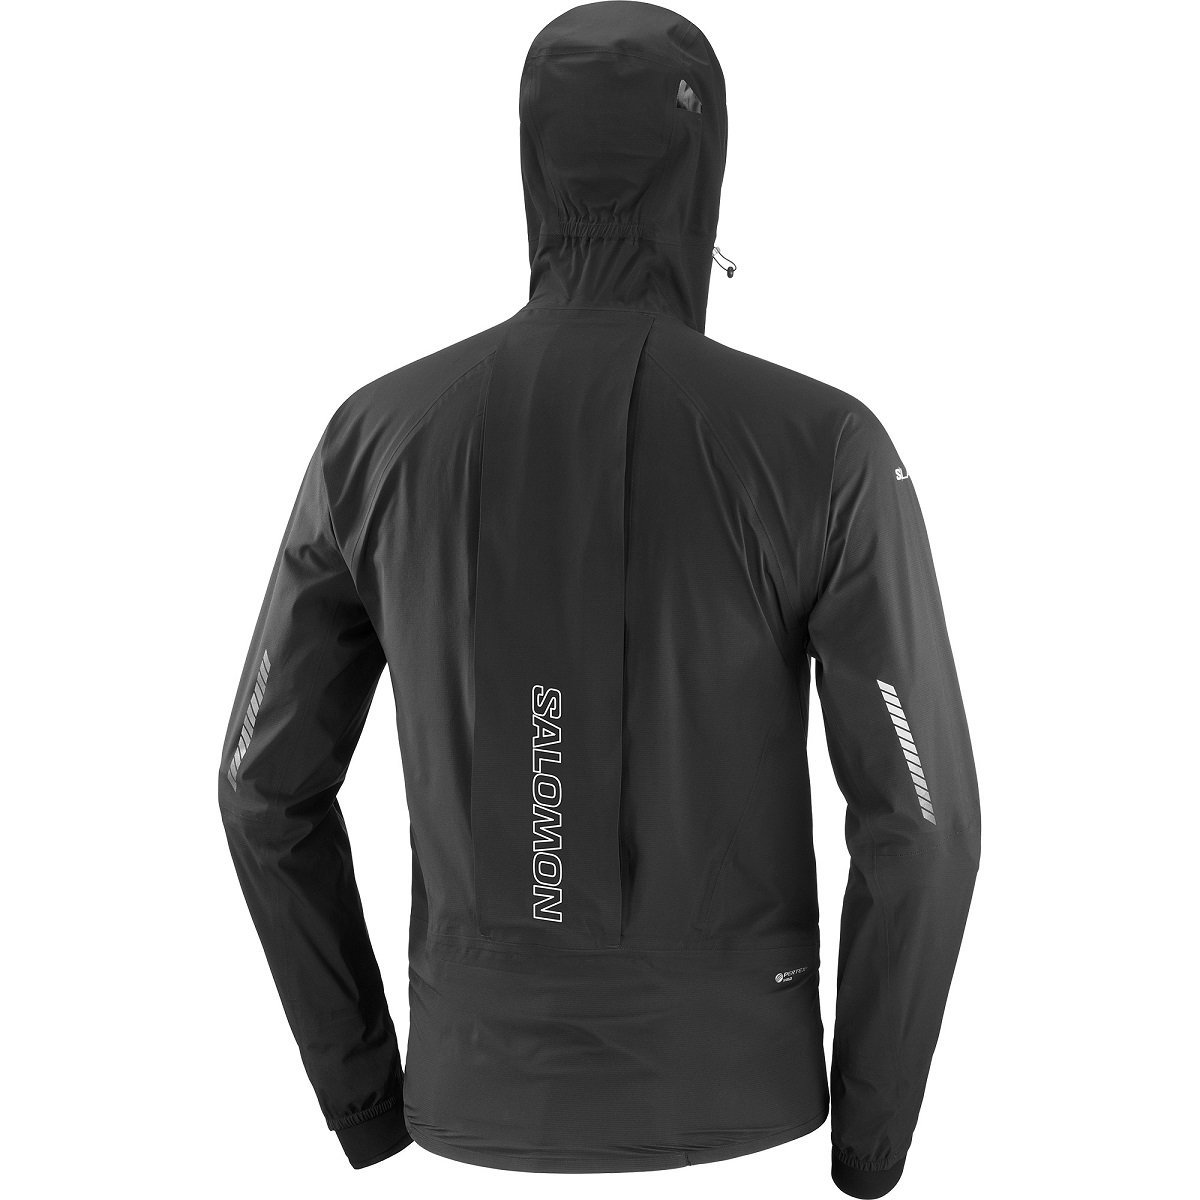 Bunda Salomon S/LAB Ultra JKT Jacket - čierna